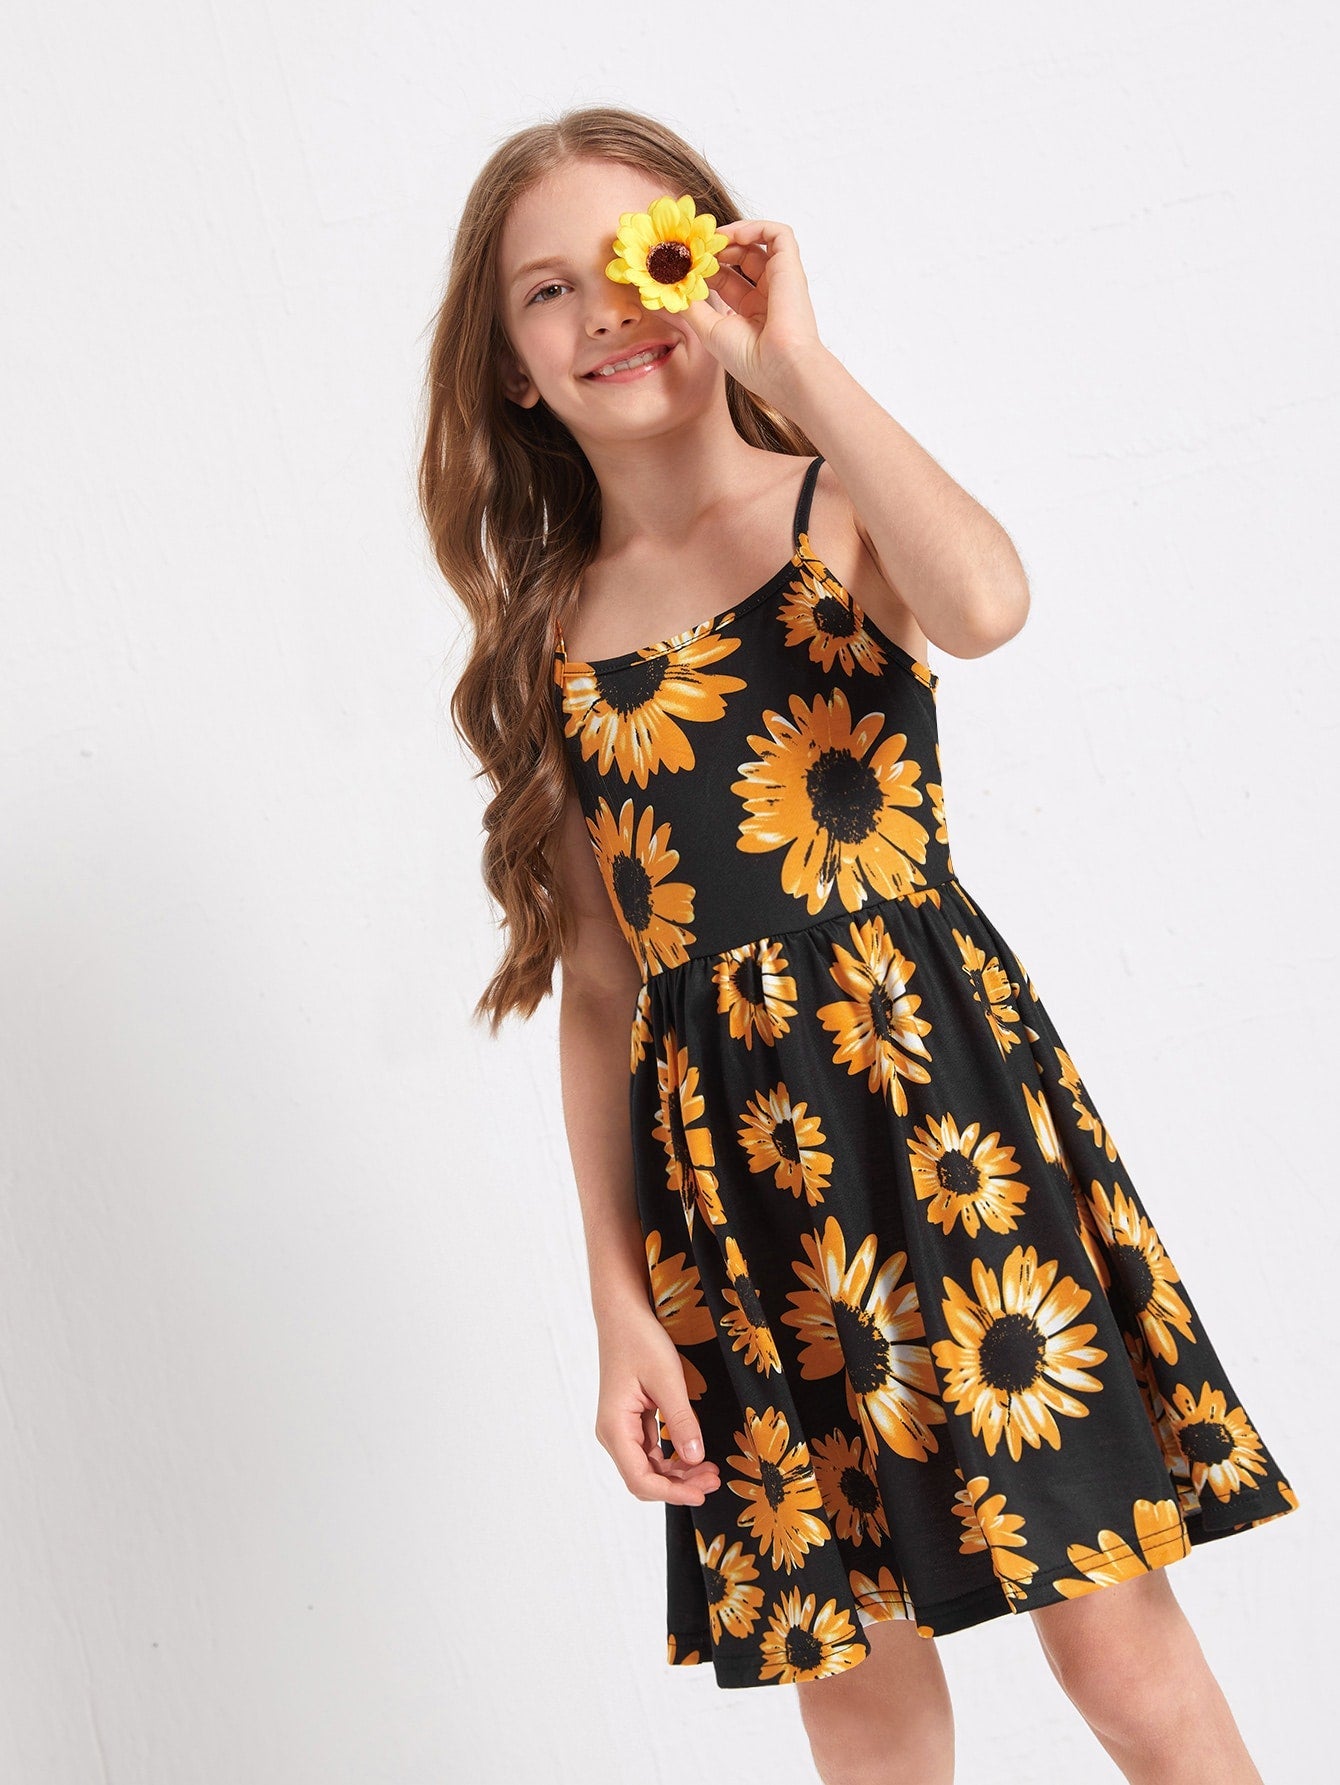 Boho Floral Print Cami Dress for Tween Girls - Sleeveless, High Waist, Flared Hem